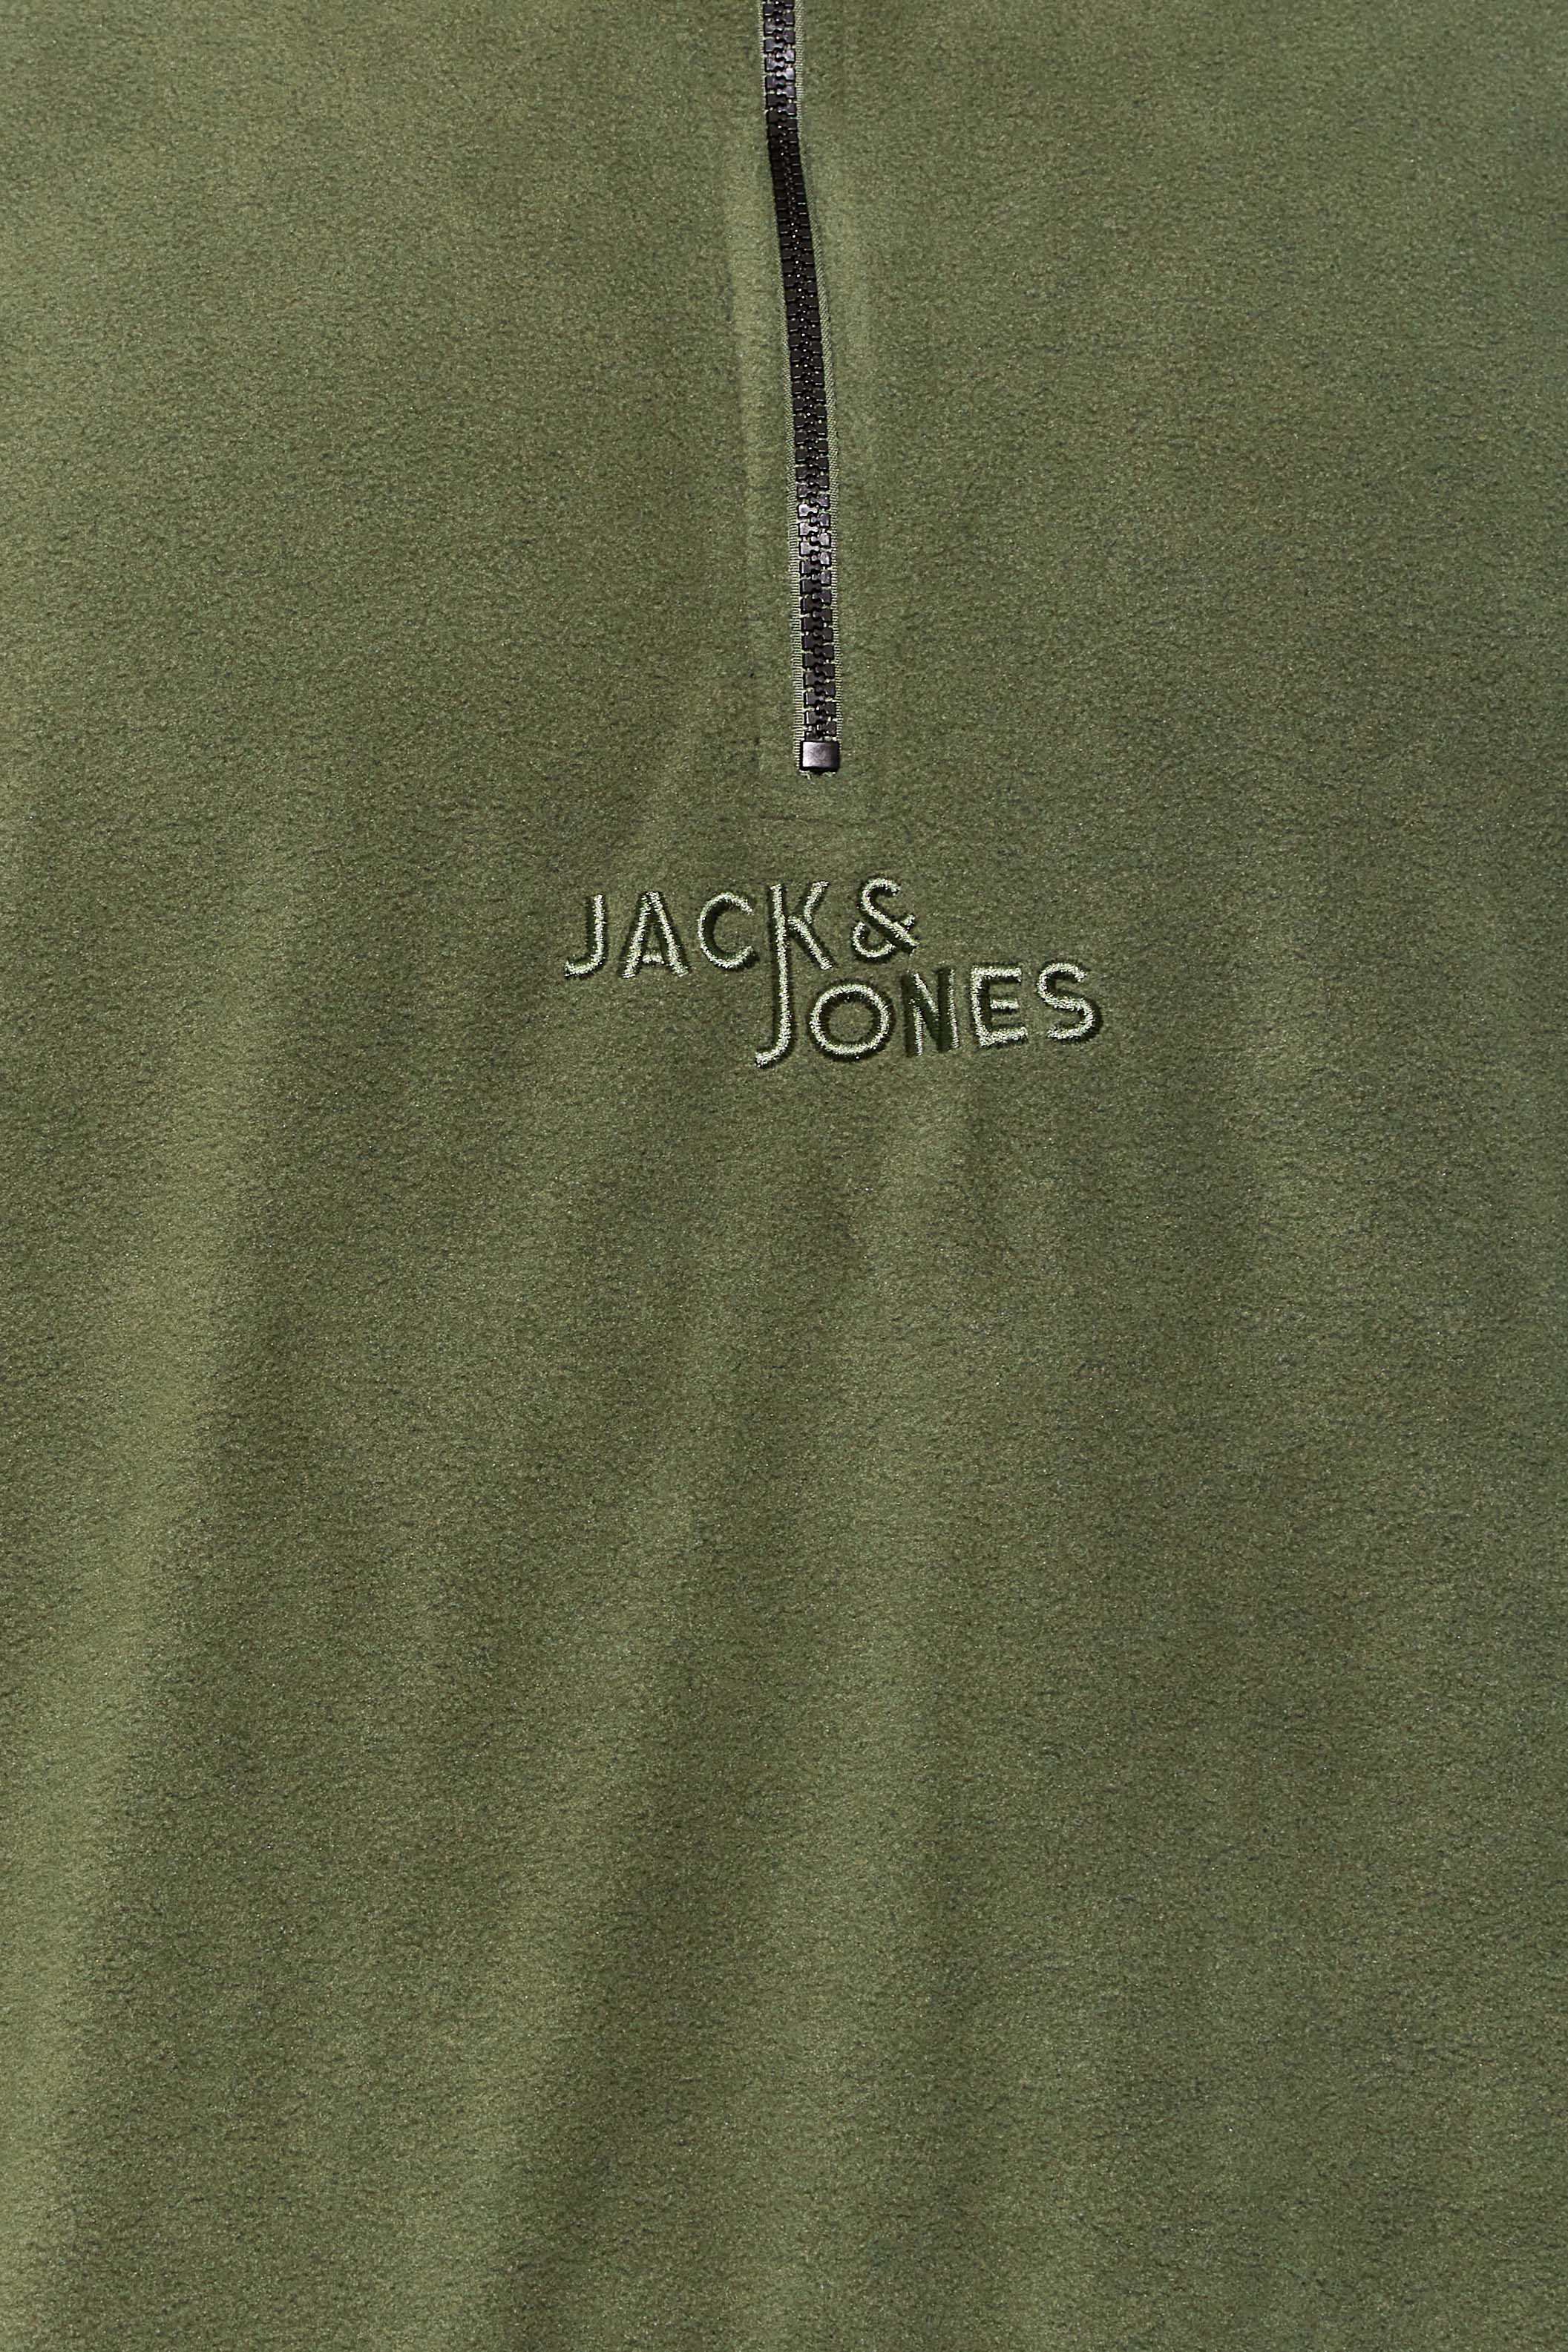 JACK & JONES Big & Tall Green Quarter Zip Fleece Sweatshirt | BadRhino 2